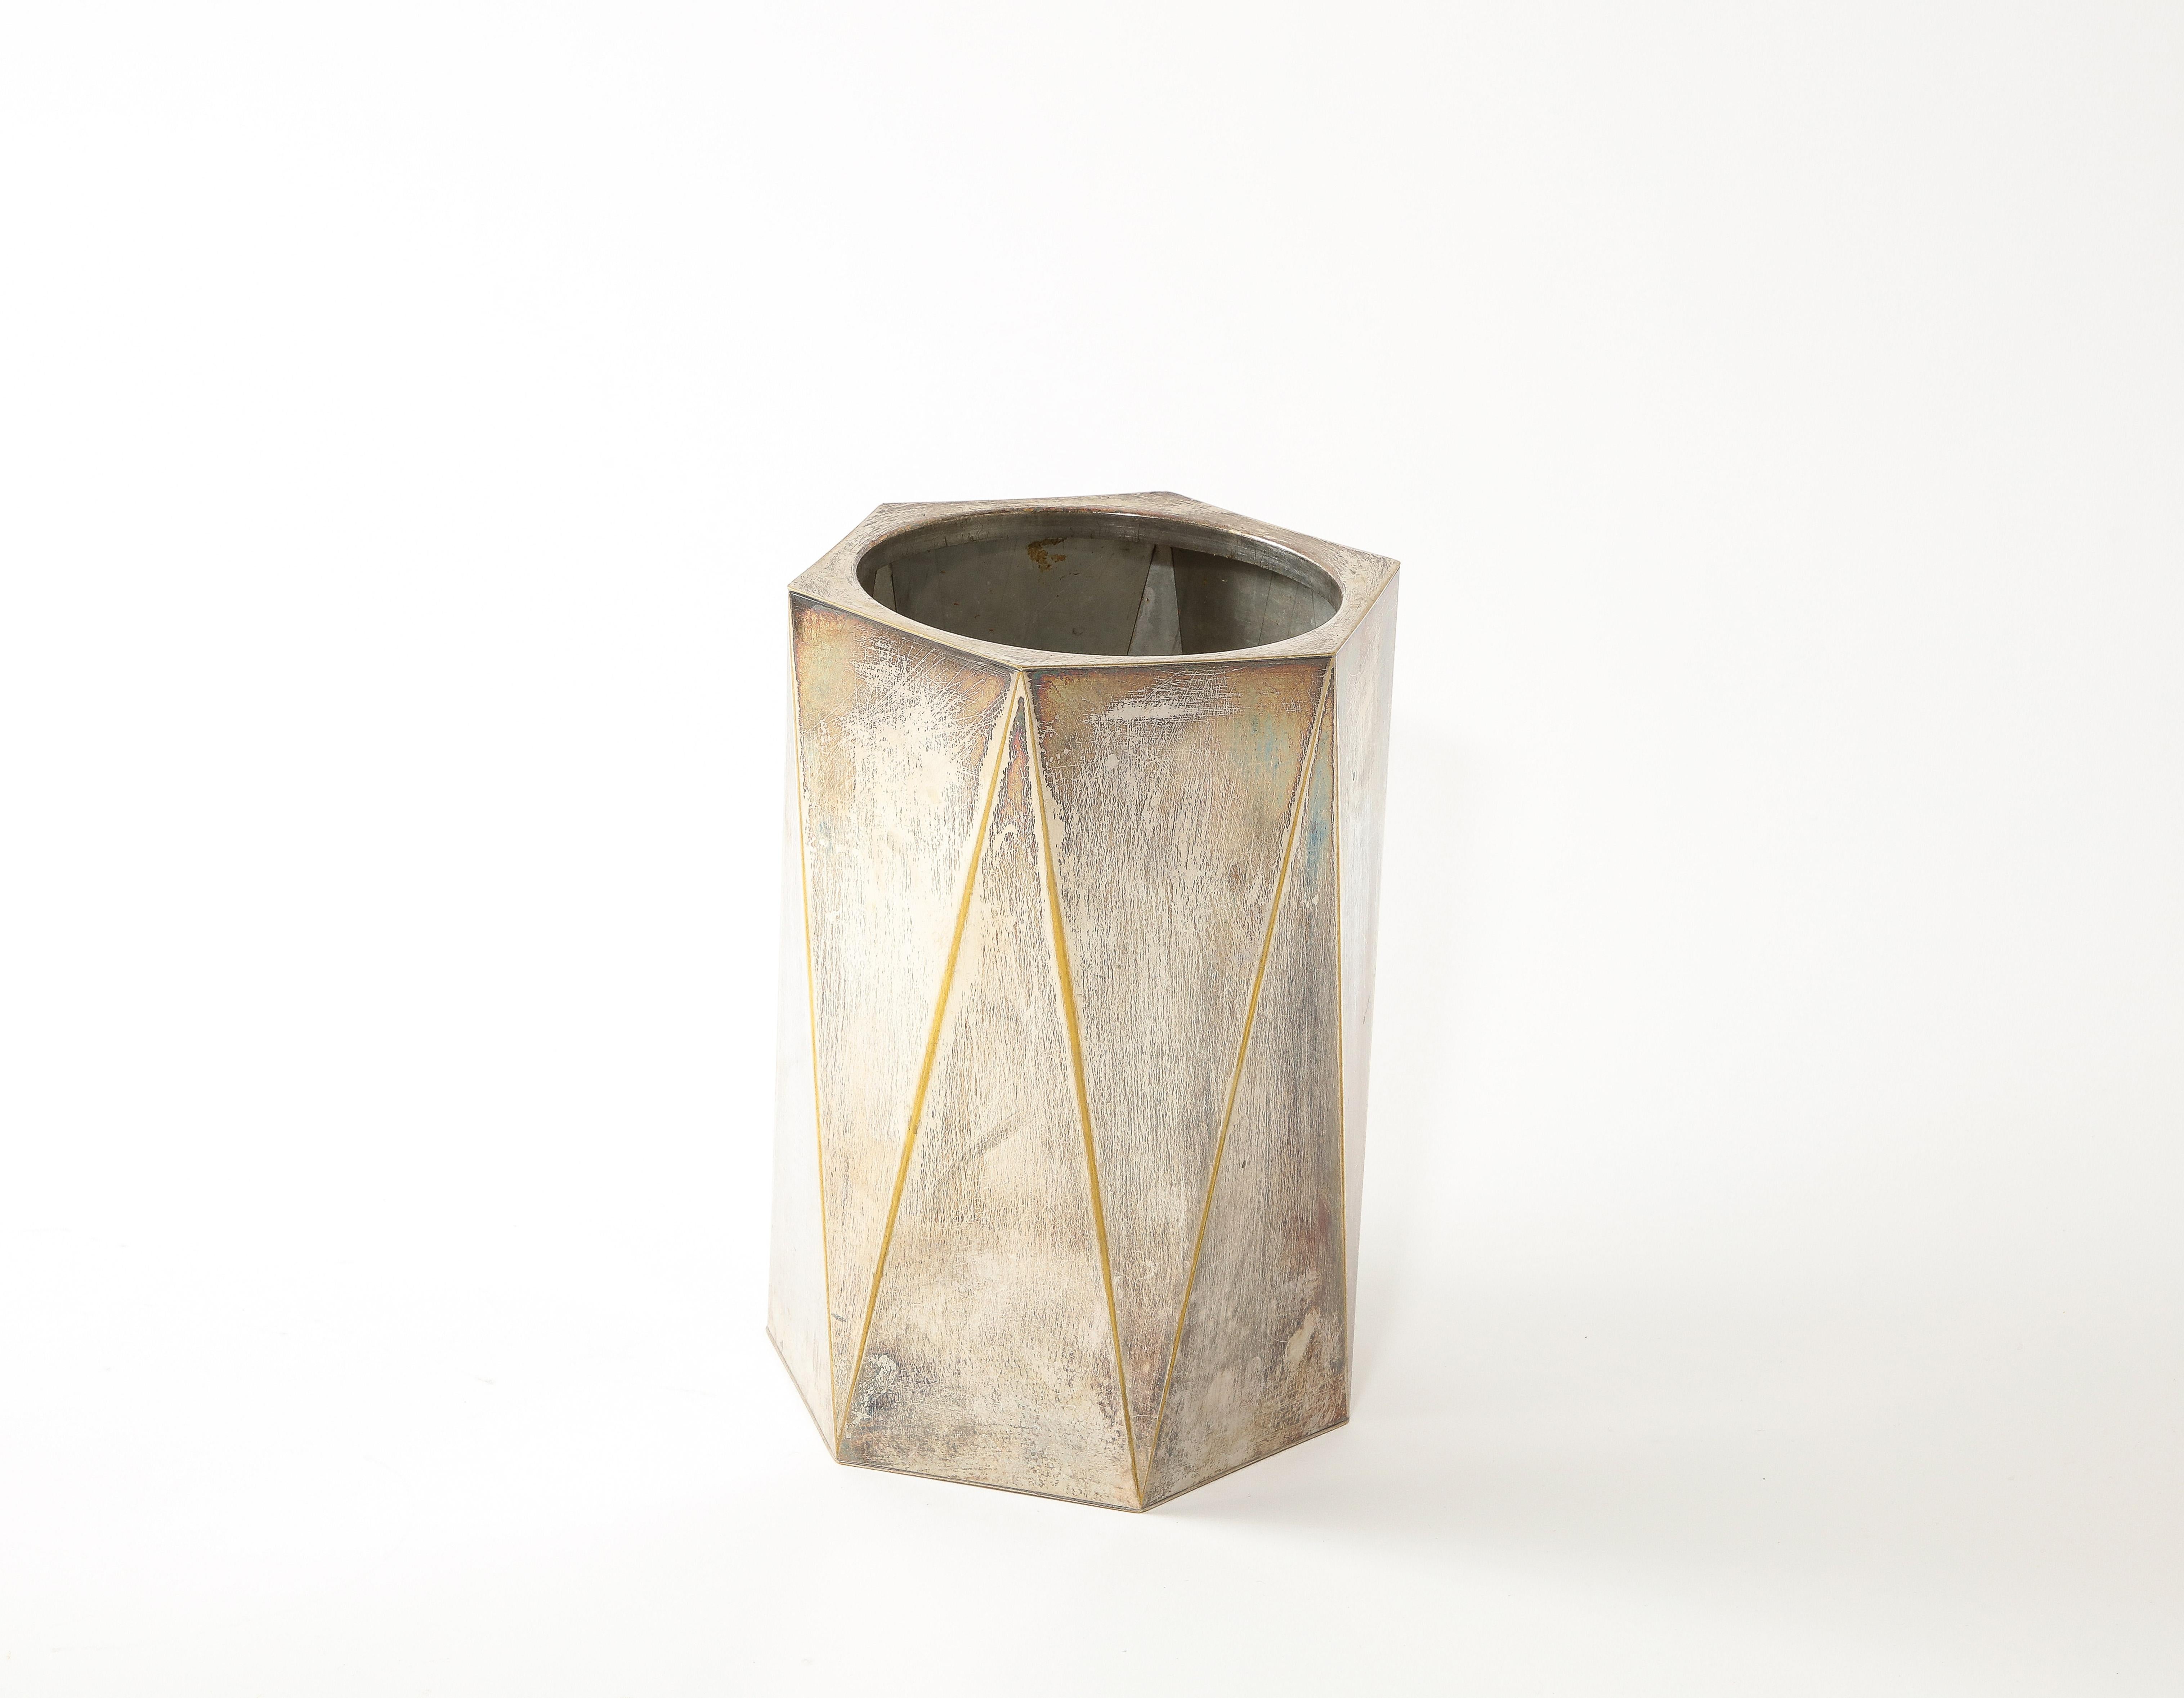 Kubistisch inspirierte Vase von Lancel aus versilbertem Messing, Punzierungen auf dem Boden.